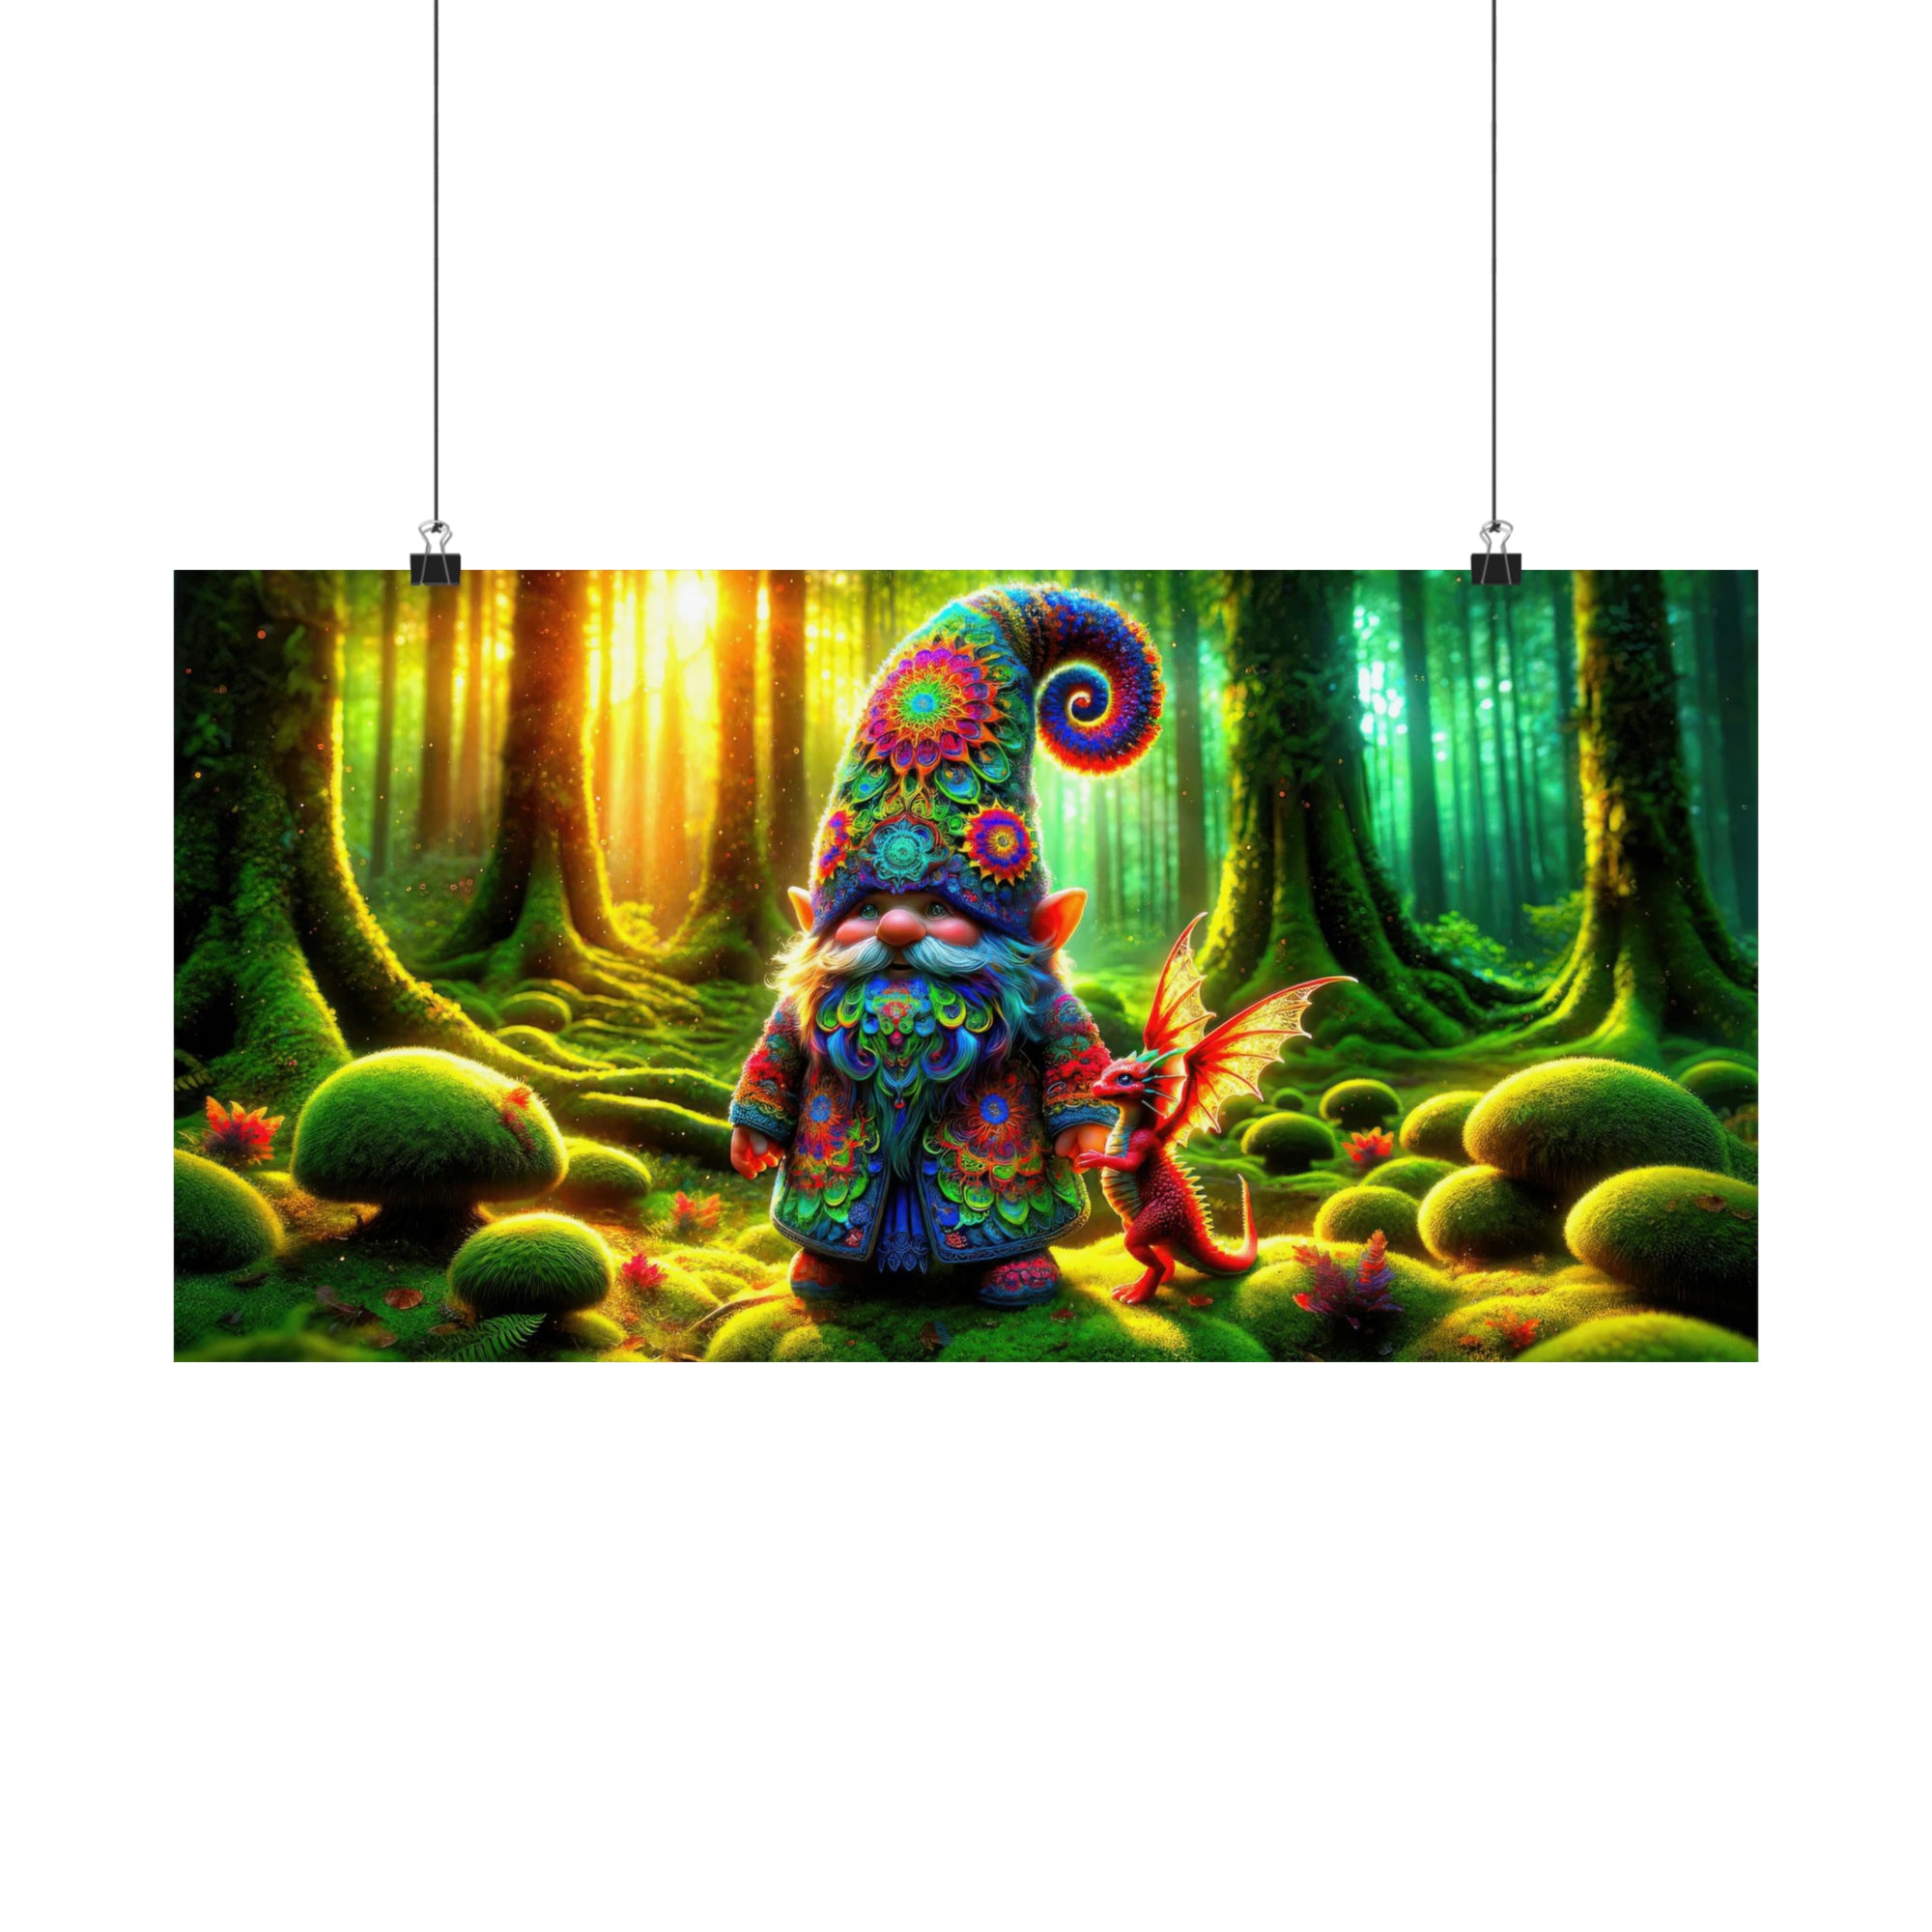 Le matin du Gnome dans les bois enchantés Poster